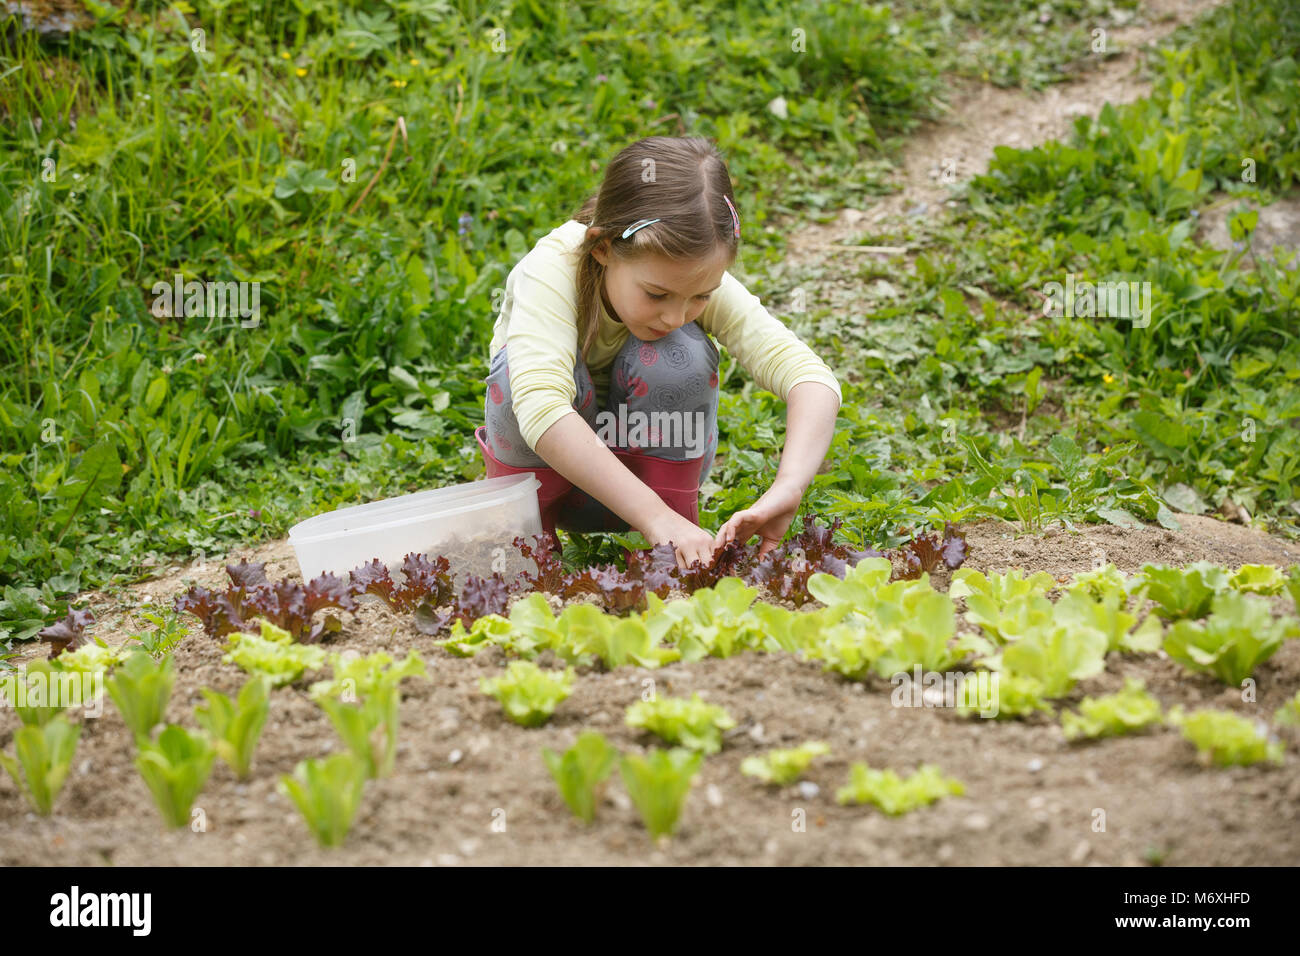 Kleines Mädchen das Einpflanzen von jungen Salat Sämlinge im Frühjahr, Hilfe bei der Gartenarbeit. Bildung für Leben, Home fun Konzept. Stockfoto